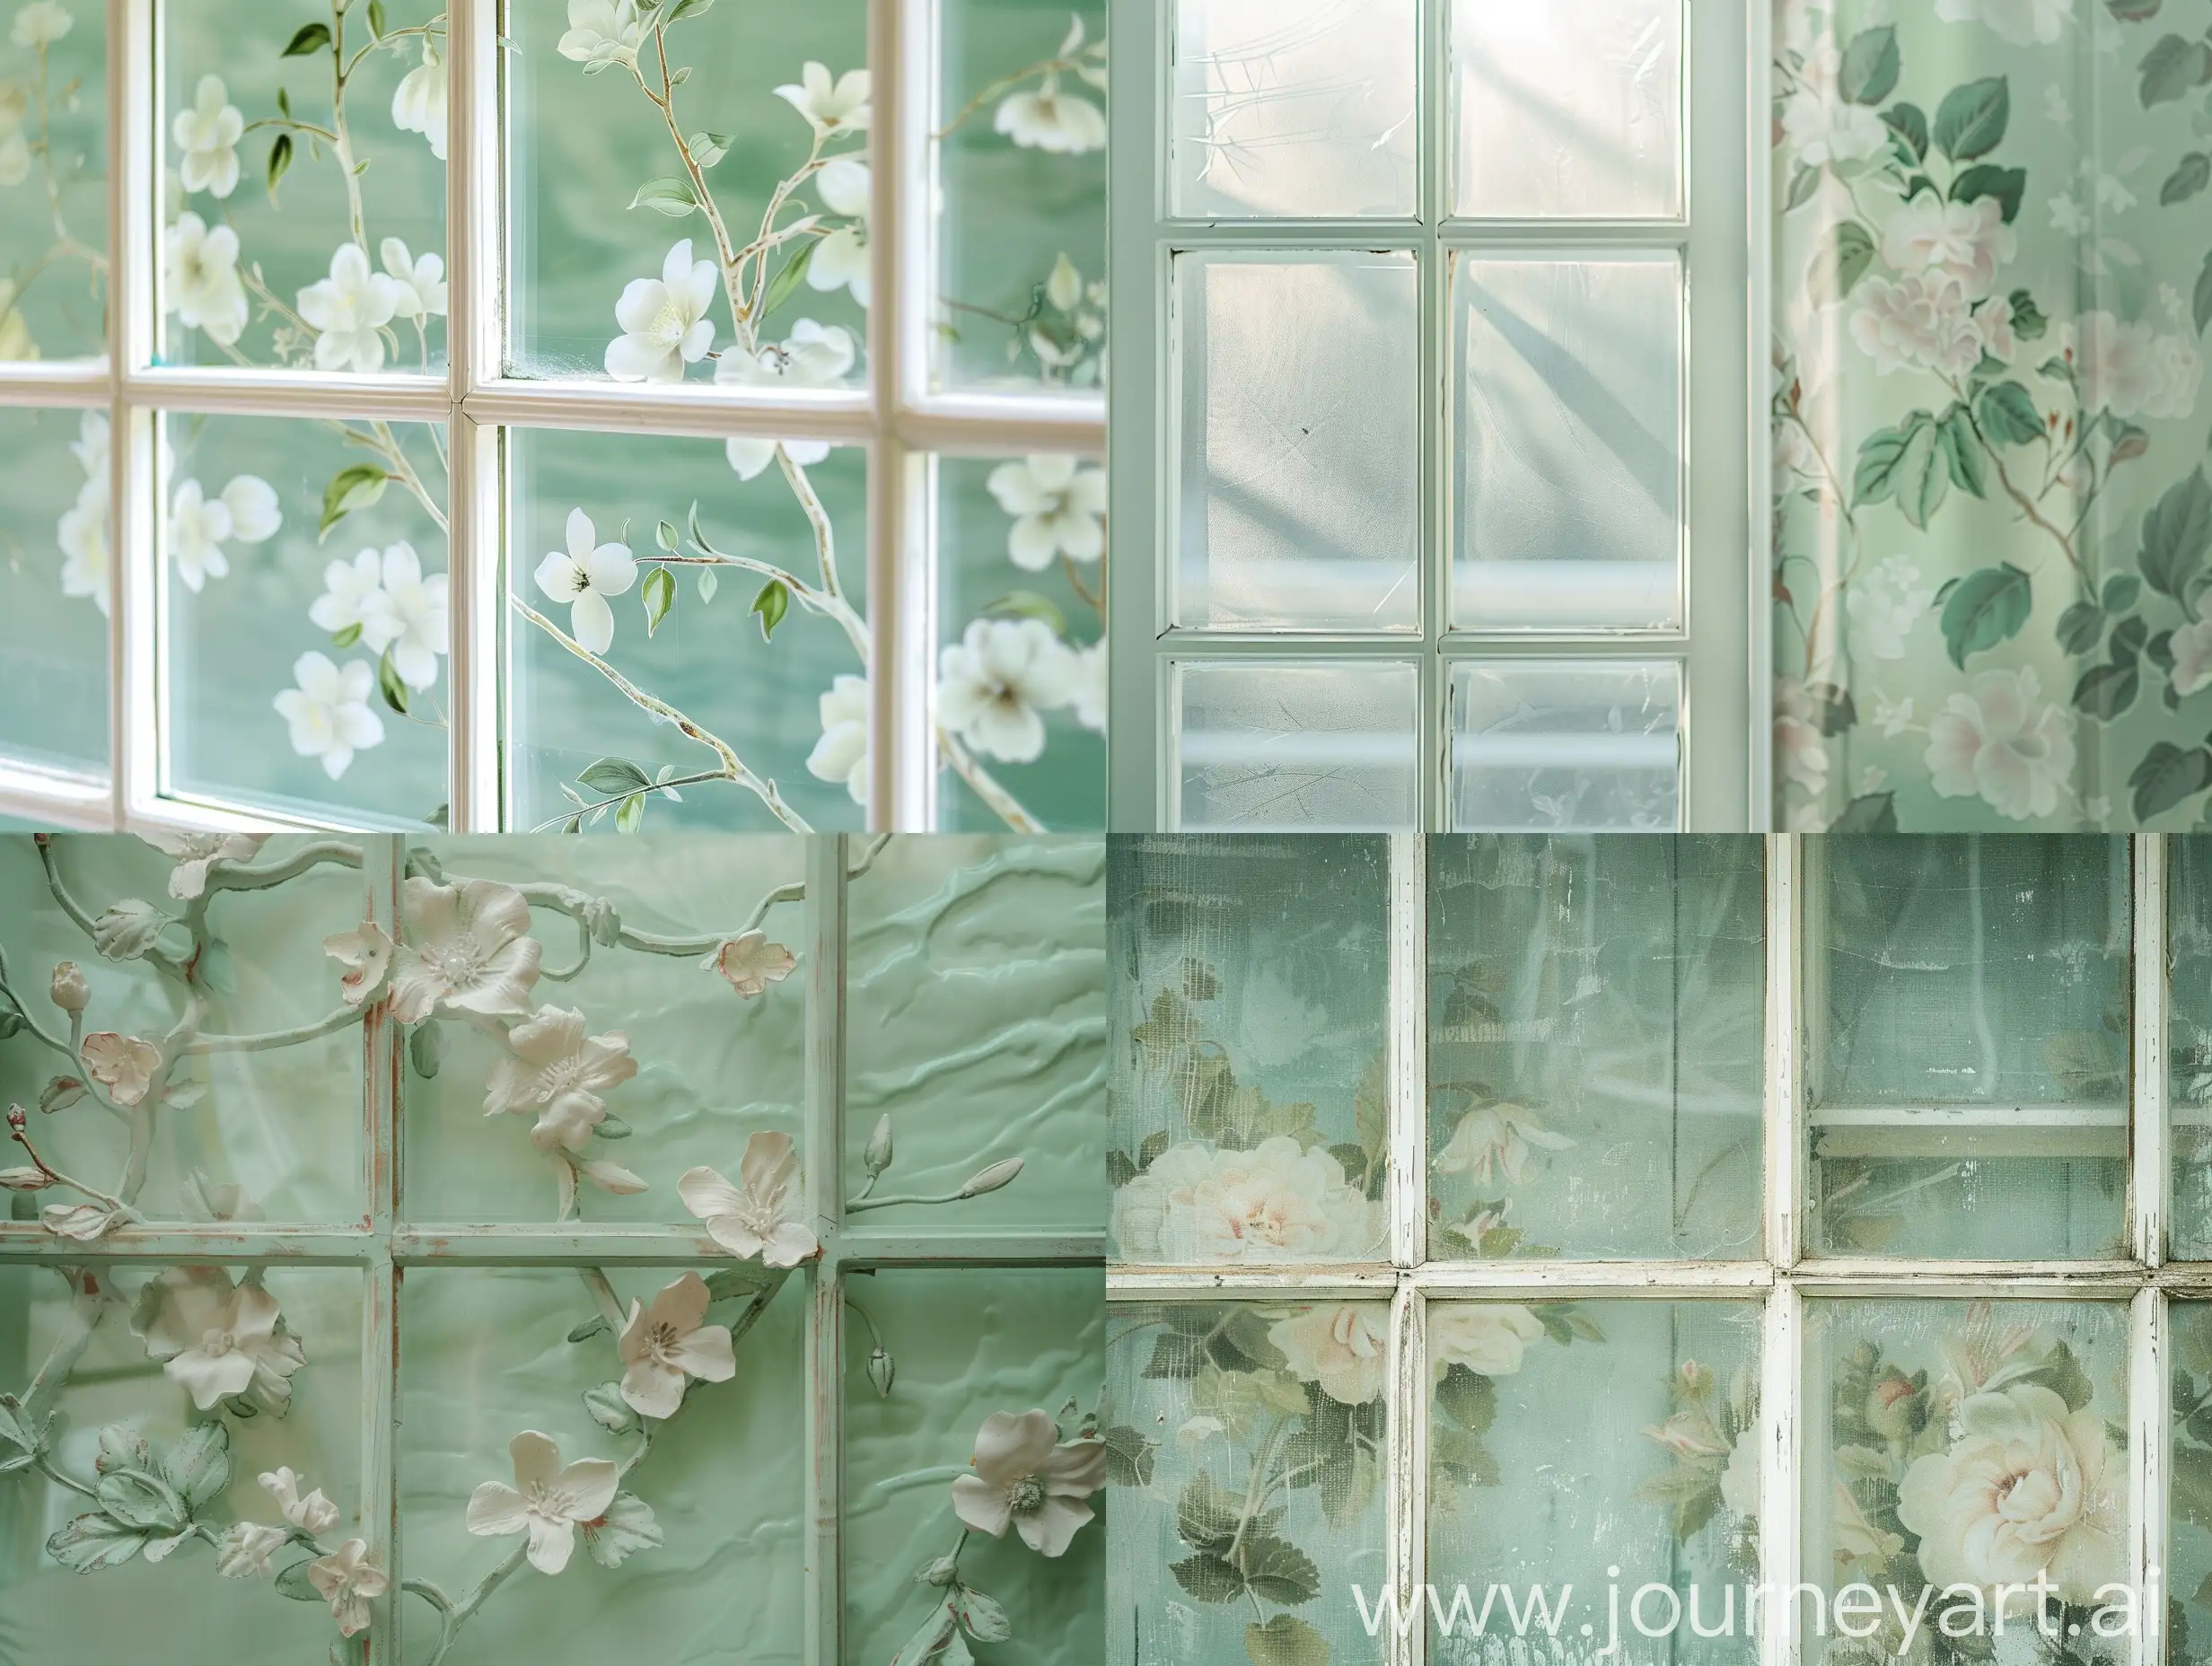 Fachada verde salvia claro de florería en close up del Cristal de la ventana vista semi lateral en fotografía realista 